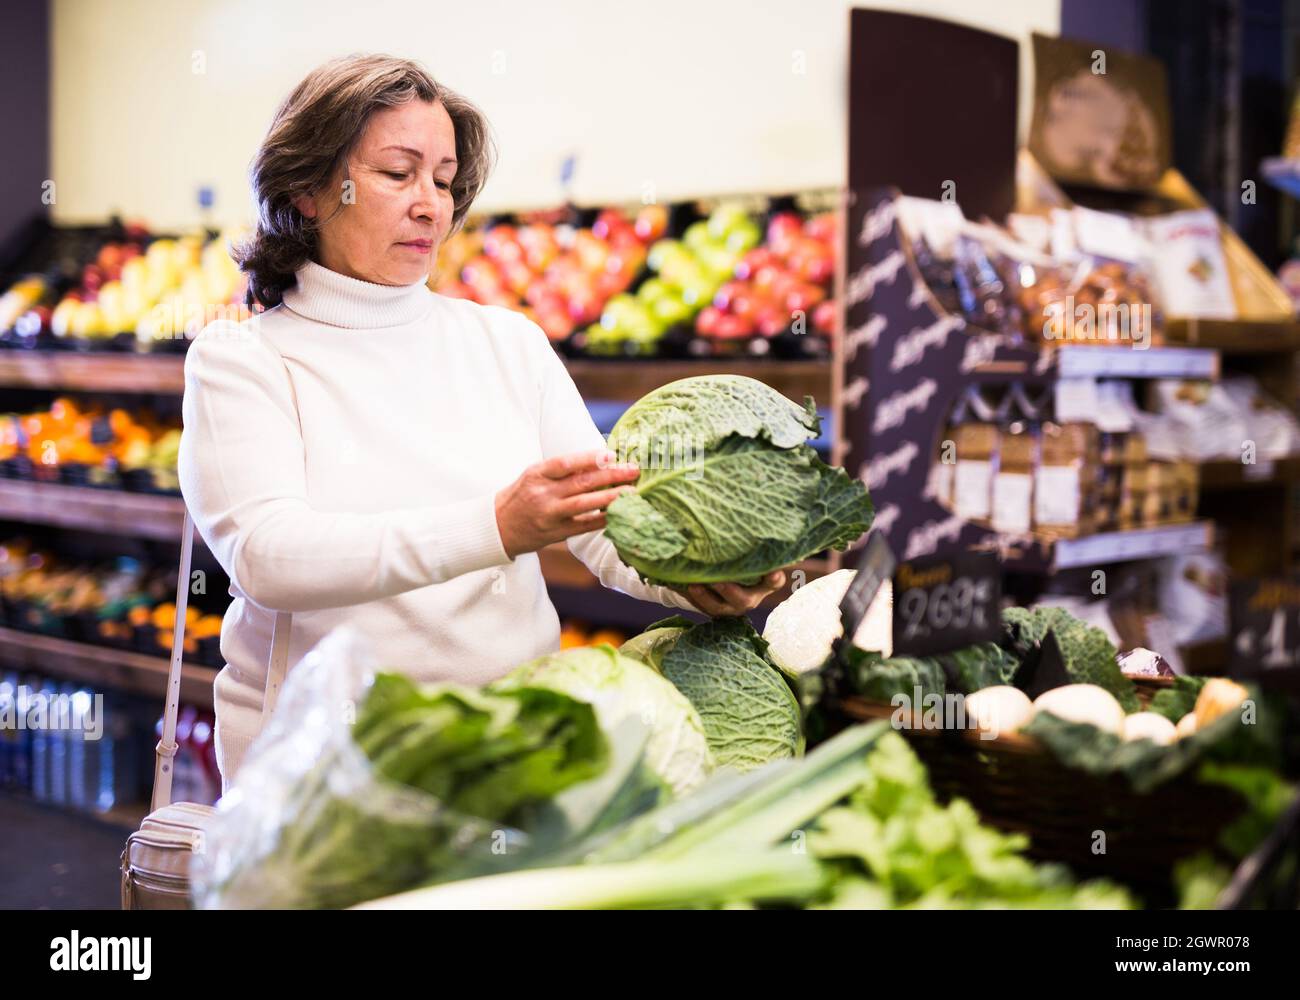 Femme âgée choisissant le chou dans la section végétale du magasin Banque D'Images